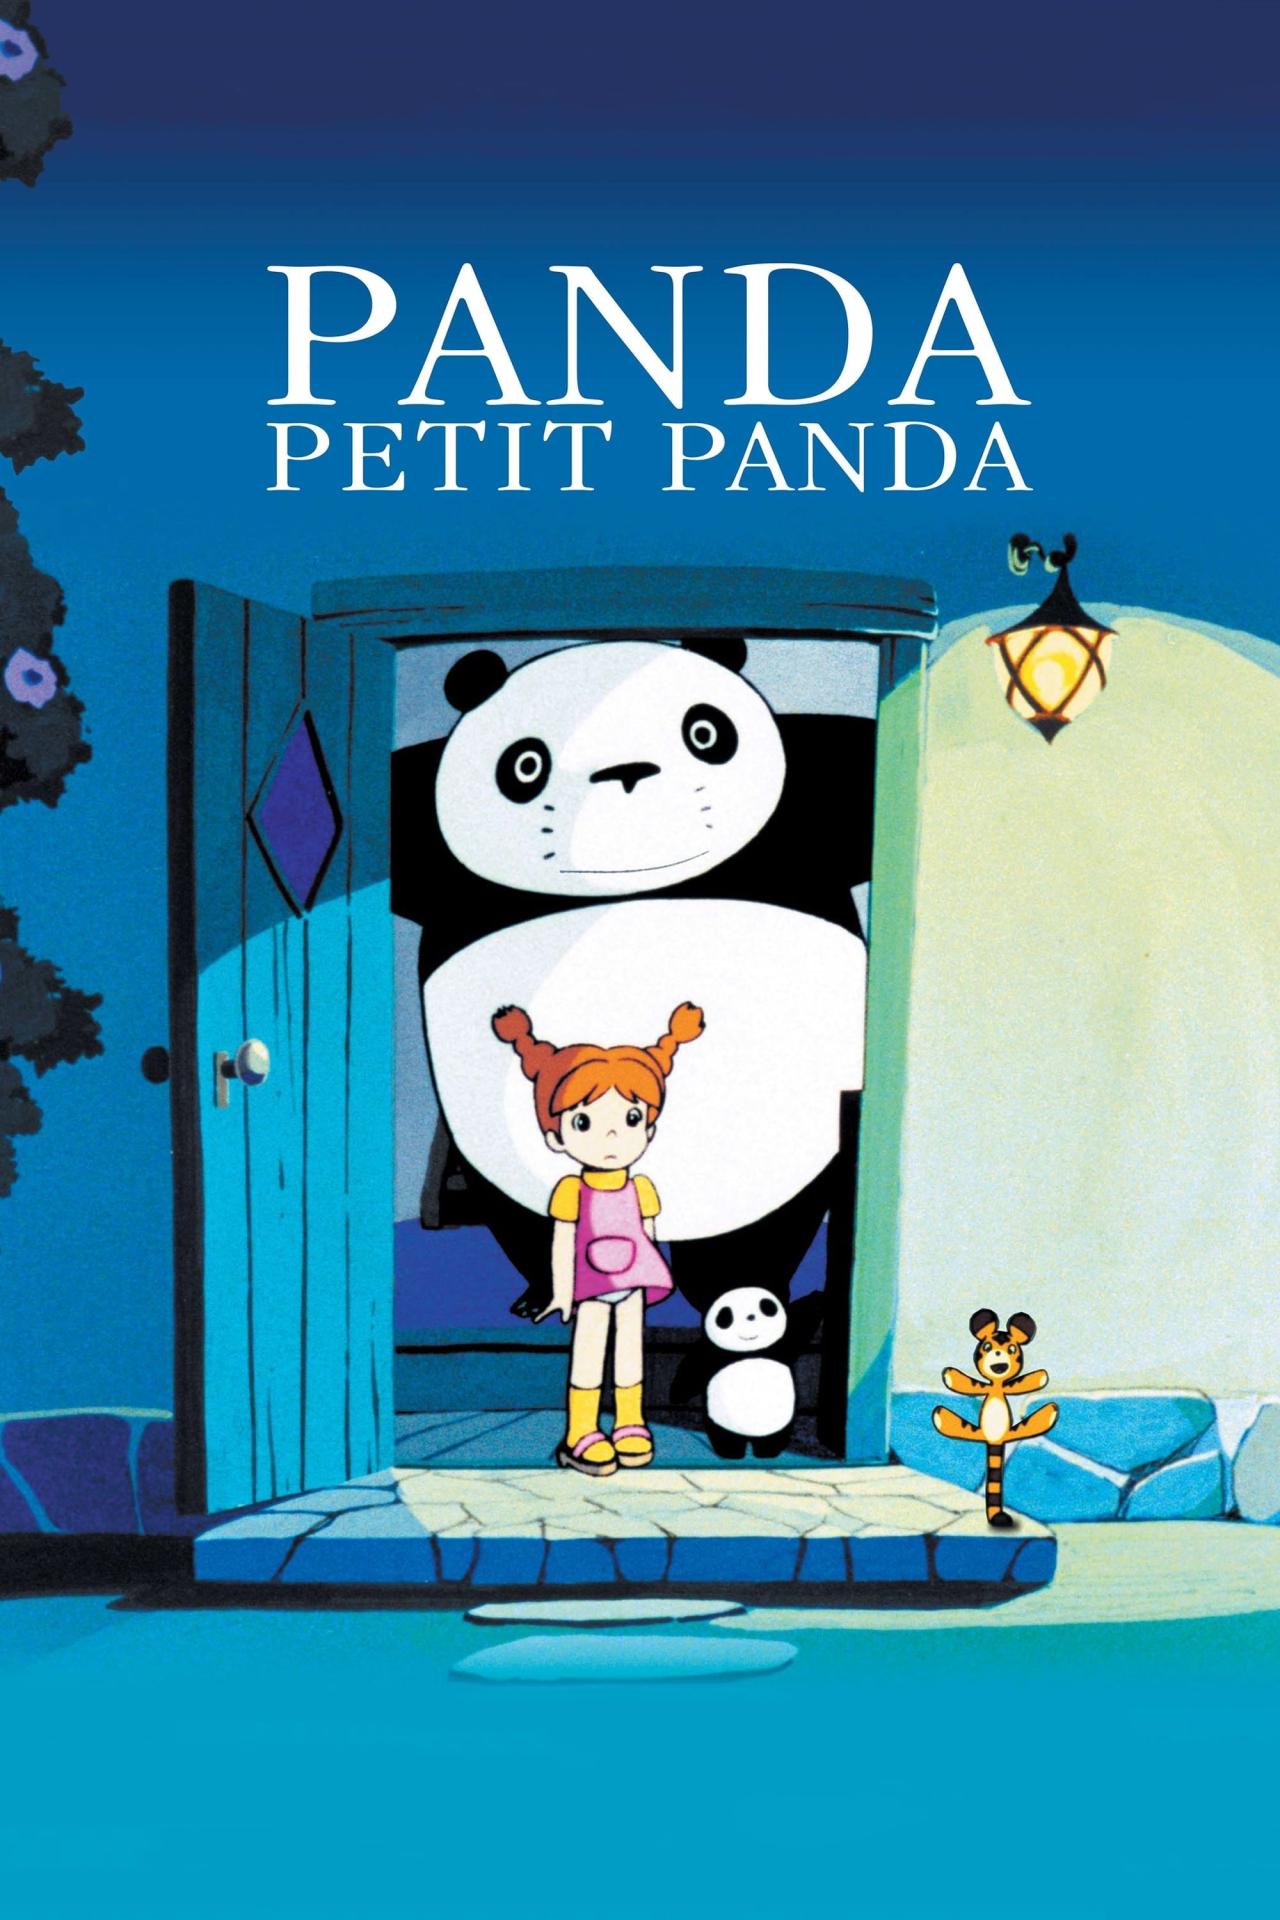 Panda Petit Panda est-il disponible sur Netflix ou autre ?